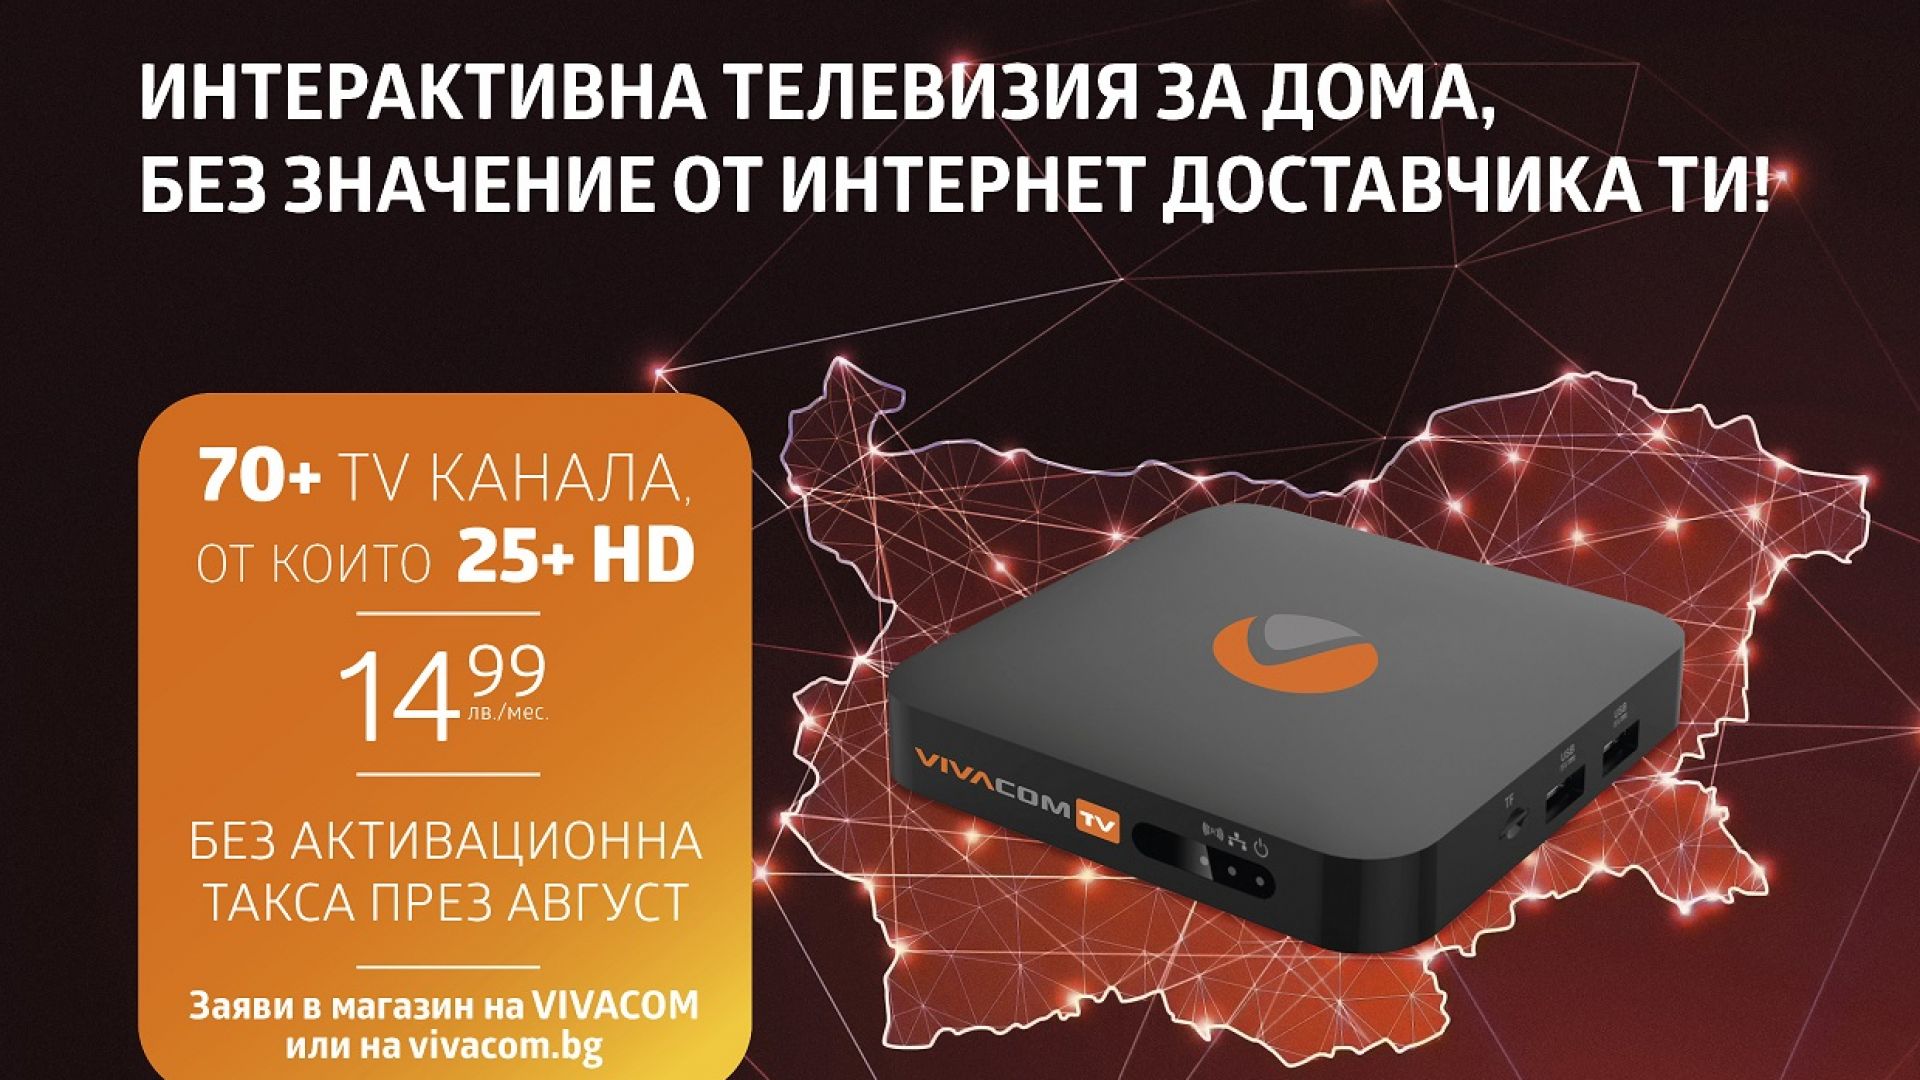 IPTV от VIVACOM – вече е достъпна и с интернет от друг доставчик